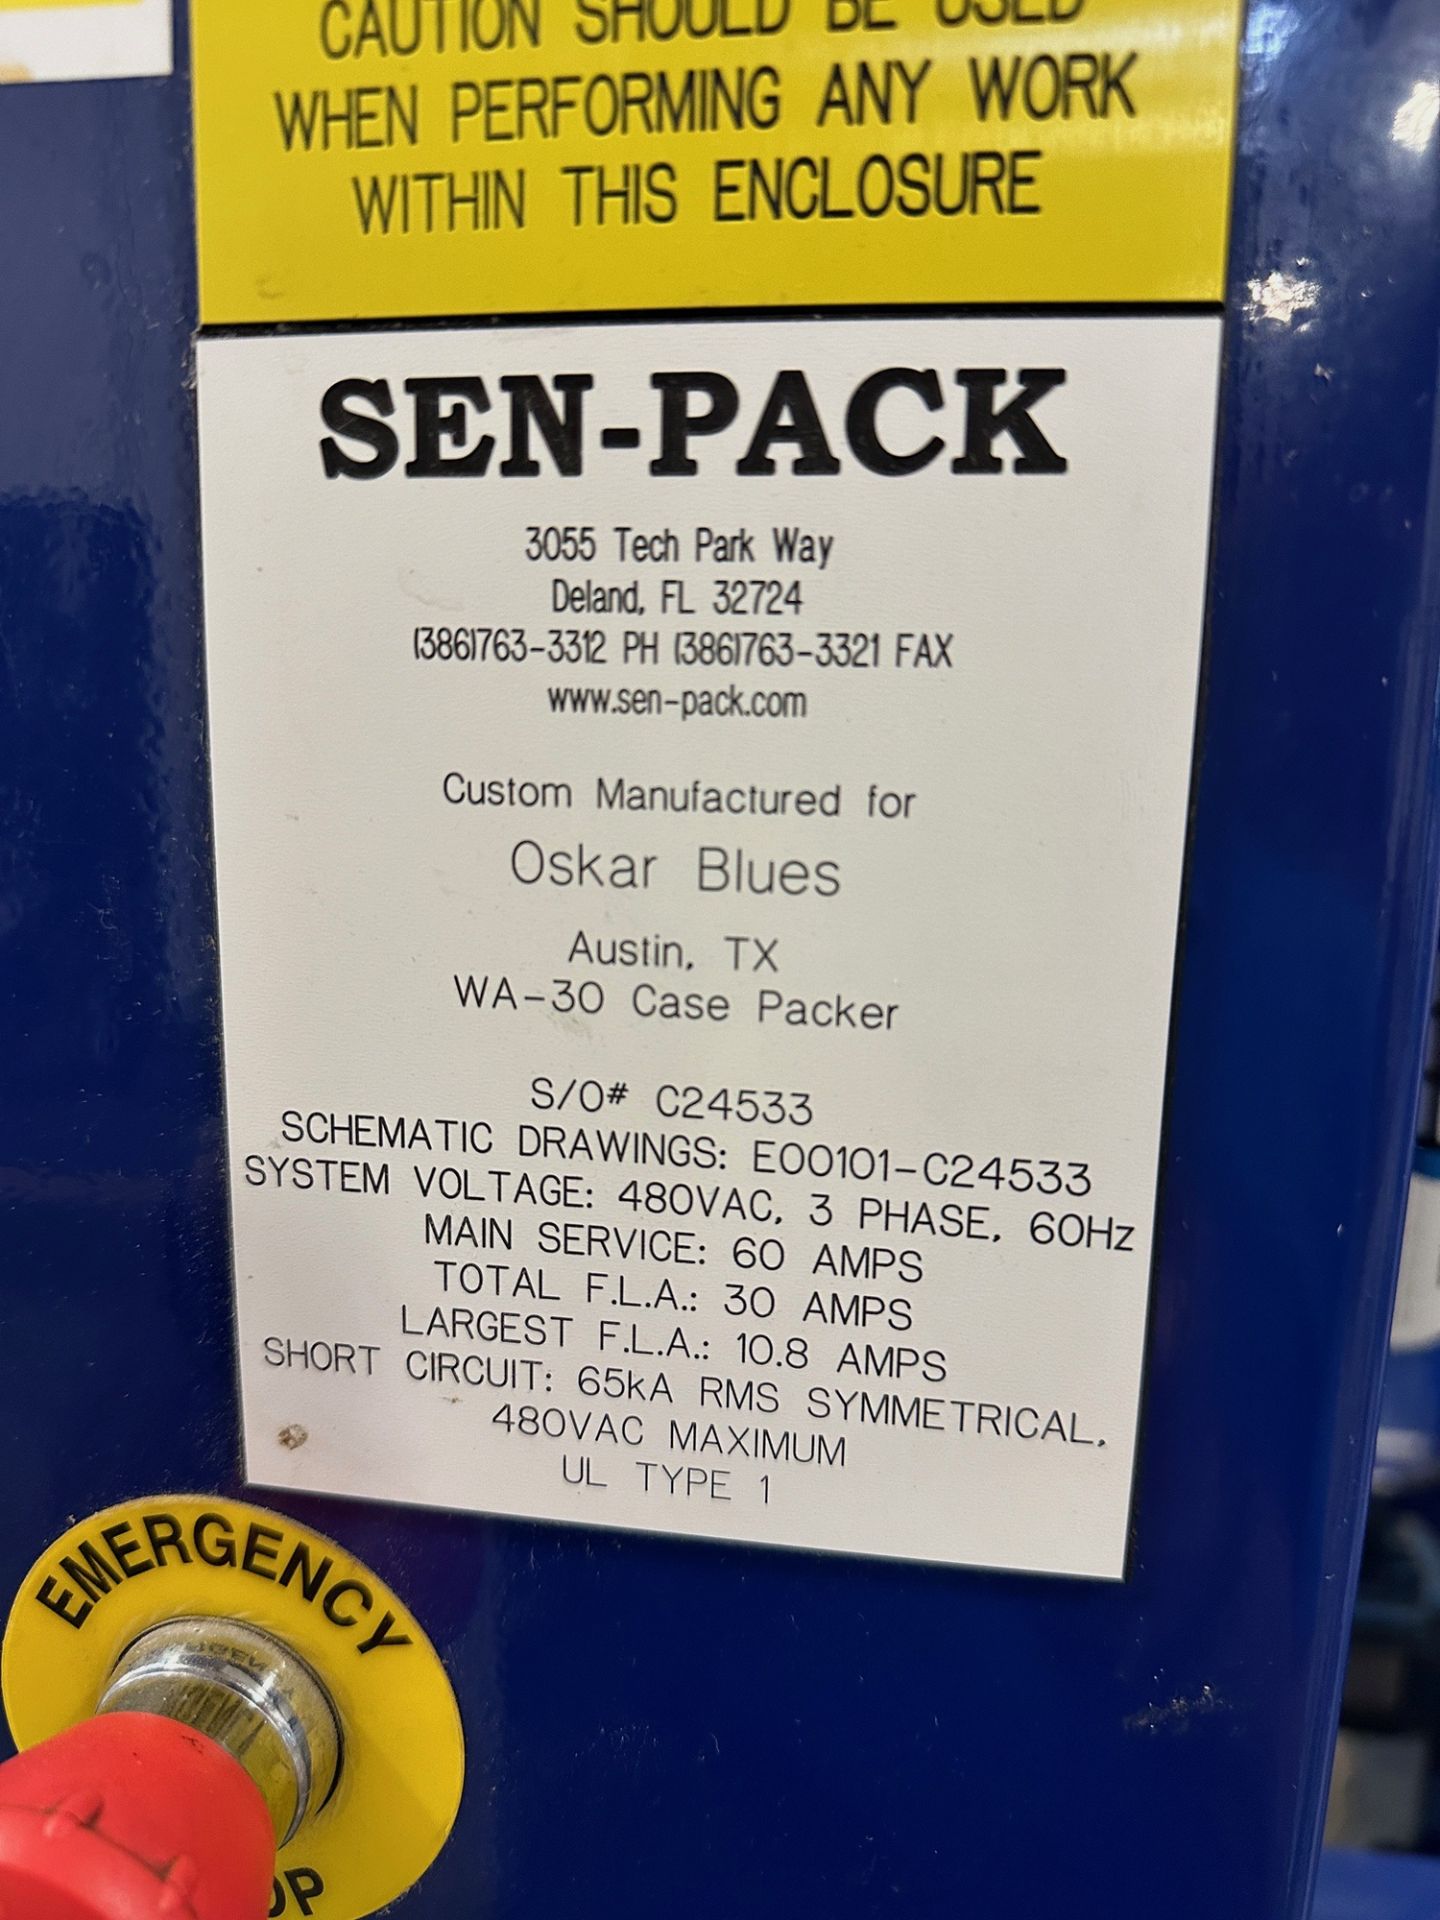 Sen-Pack Model WA-30 Case Packer, 480V/3ph/60Hz, S/O: C24533 - Image 11 of 11